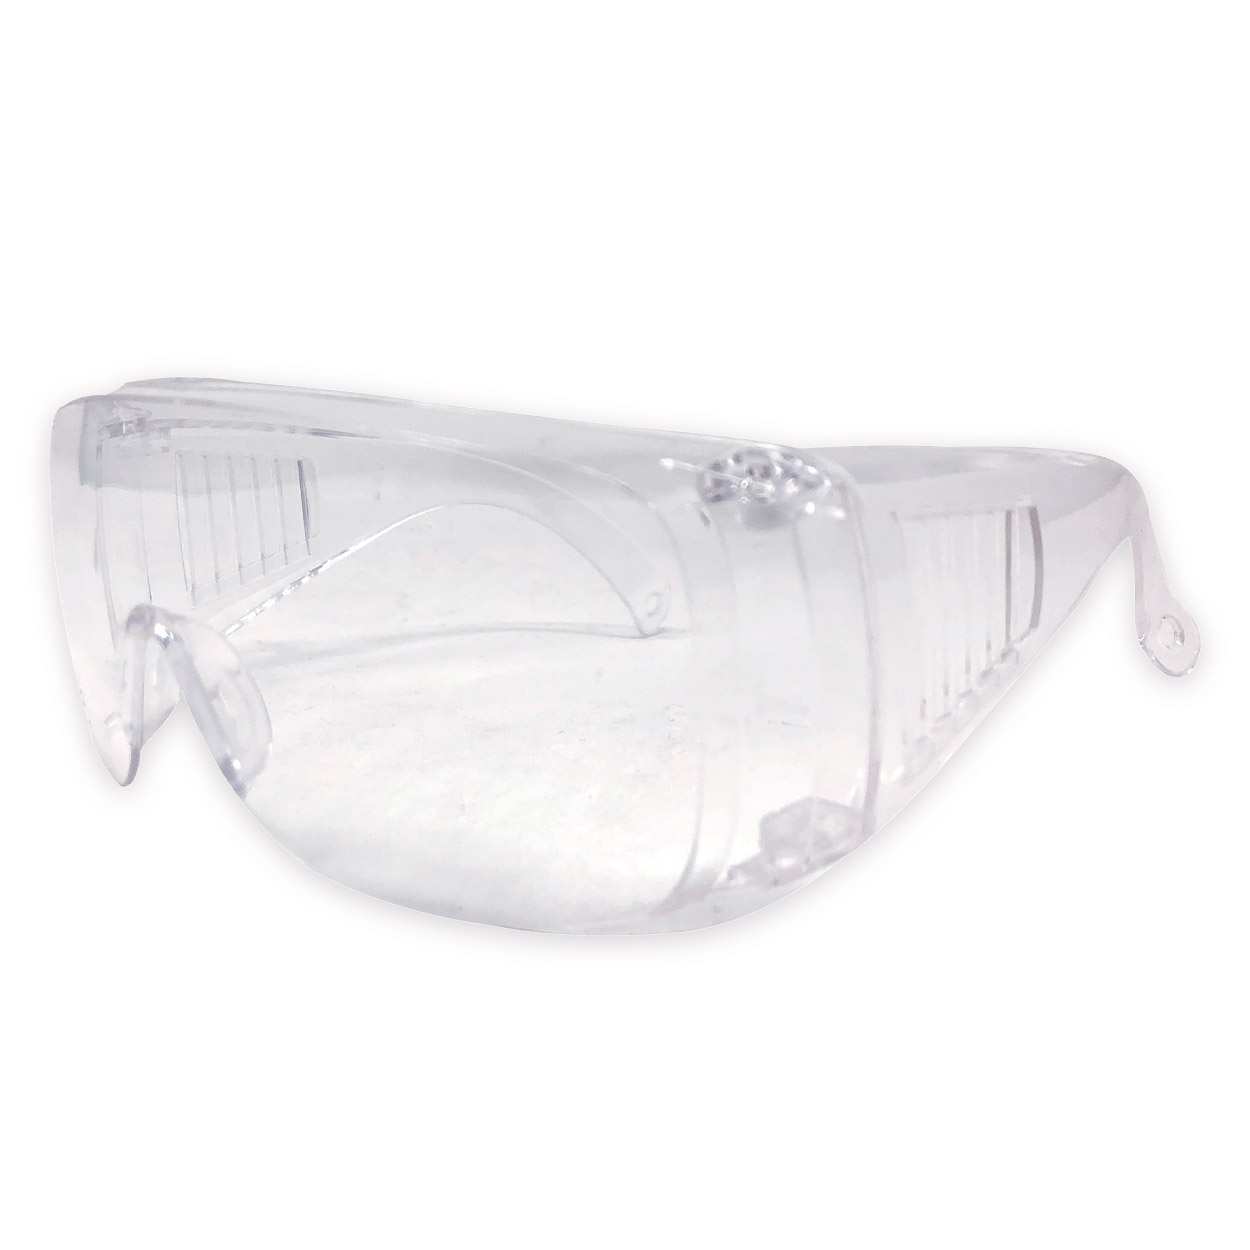 Schutz- und Überbrille, farbloses Polycarbonat 